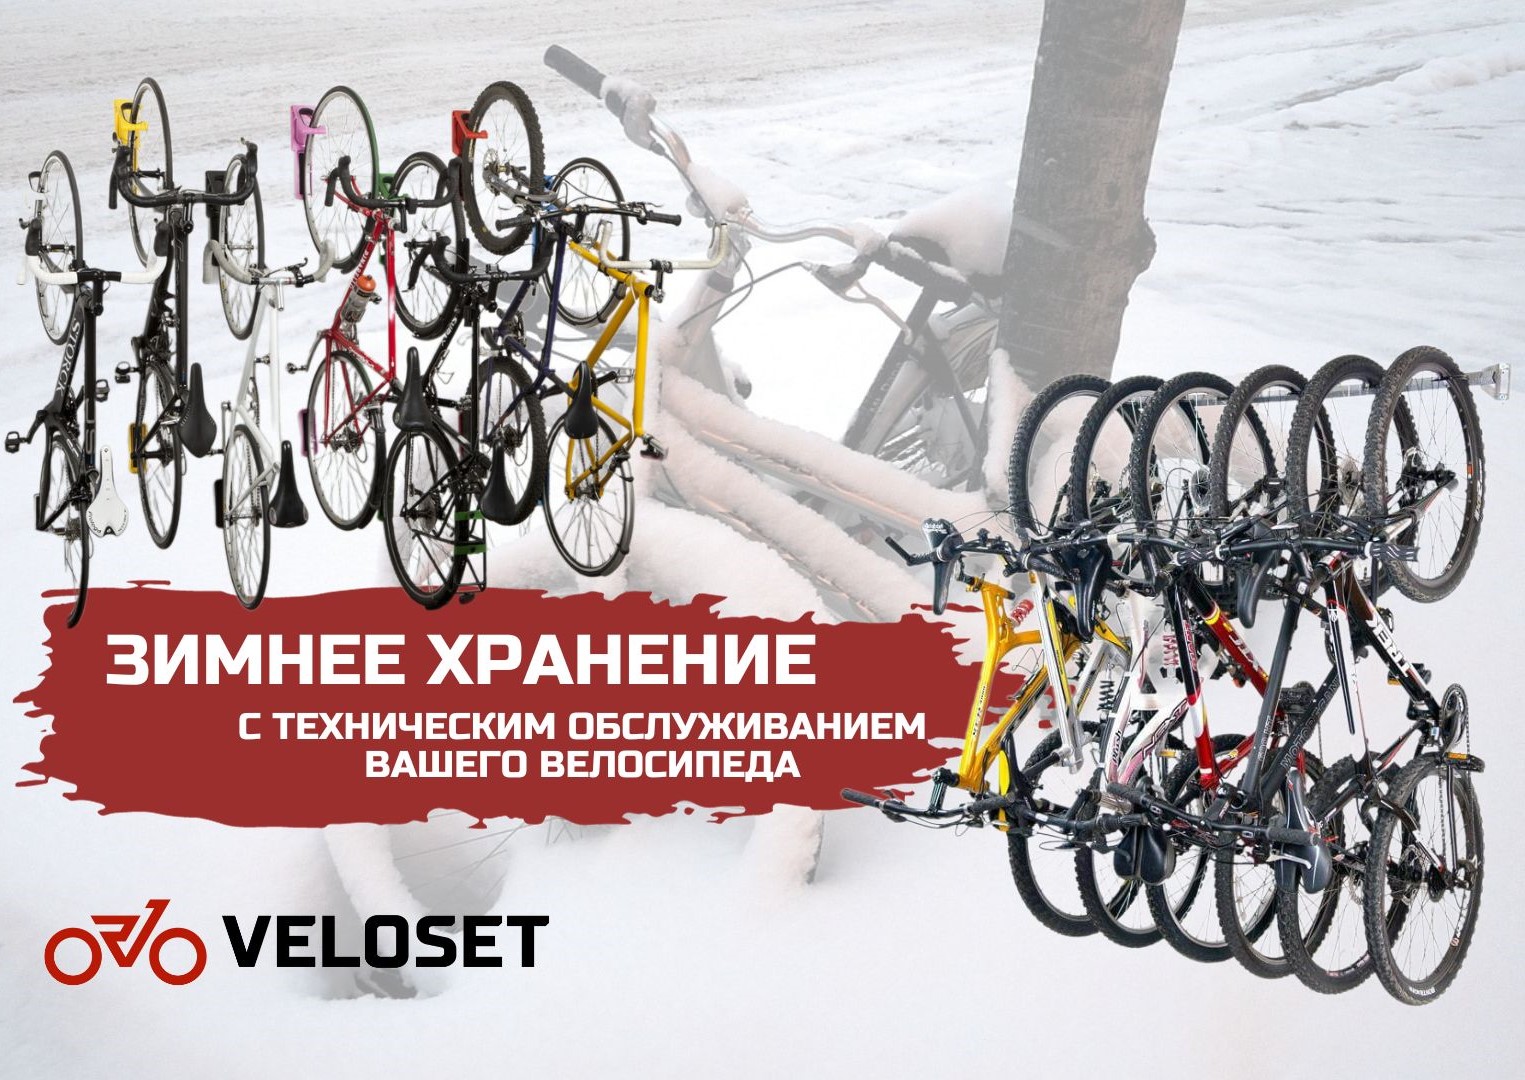 Зимнее хранение велосипедов от VELOSET